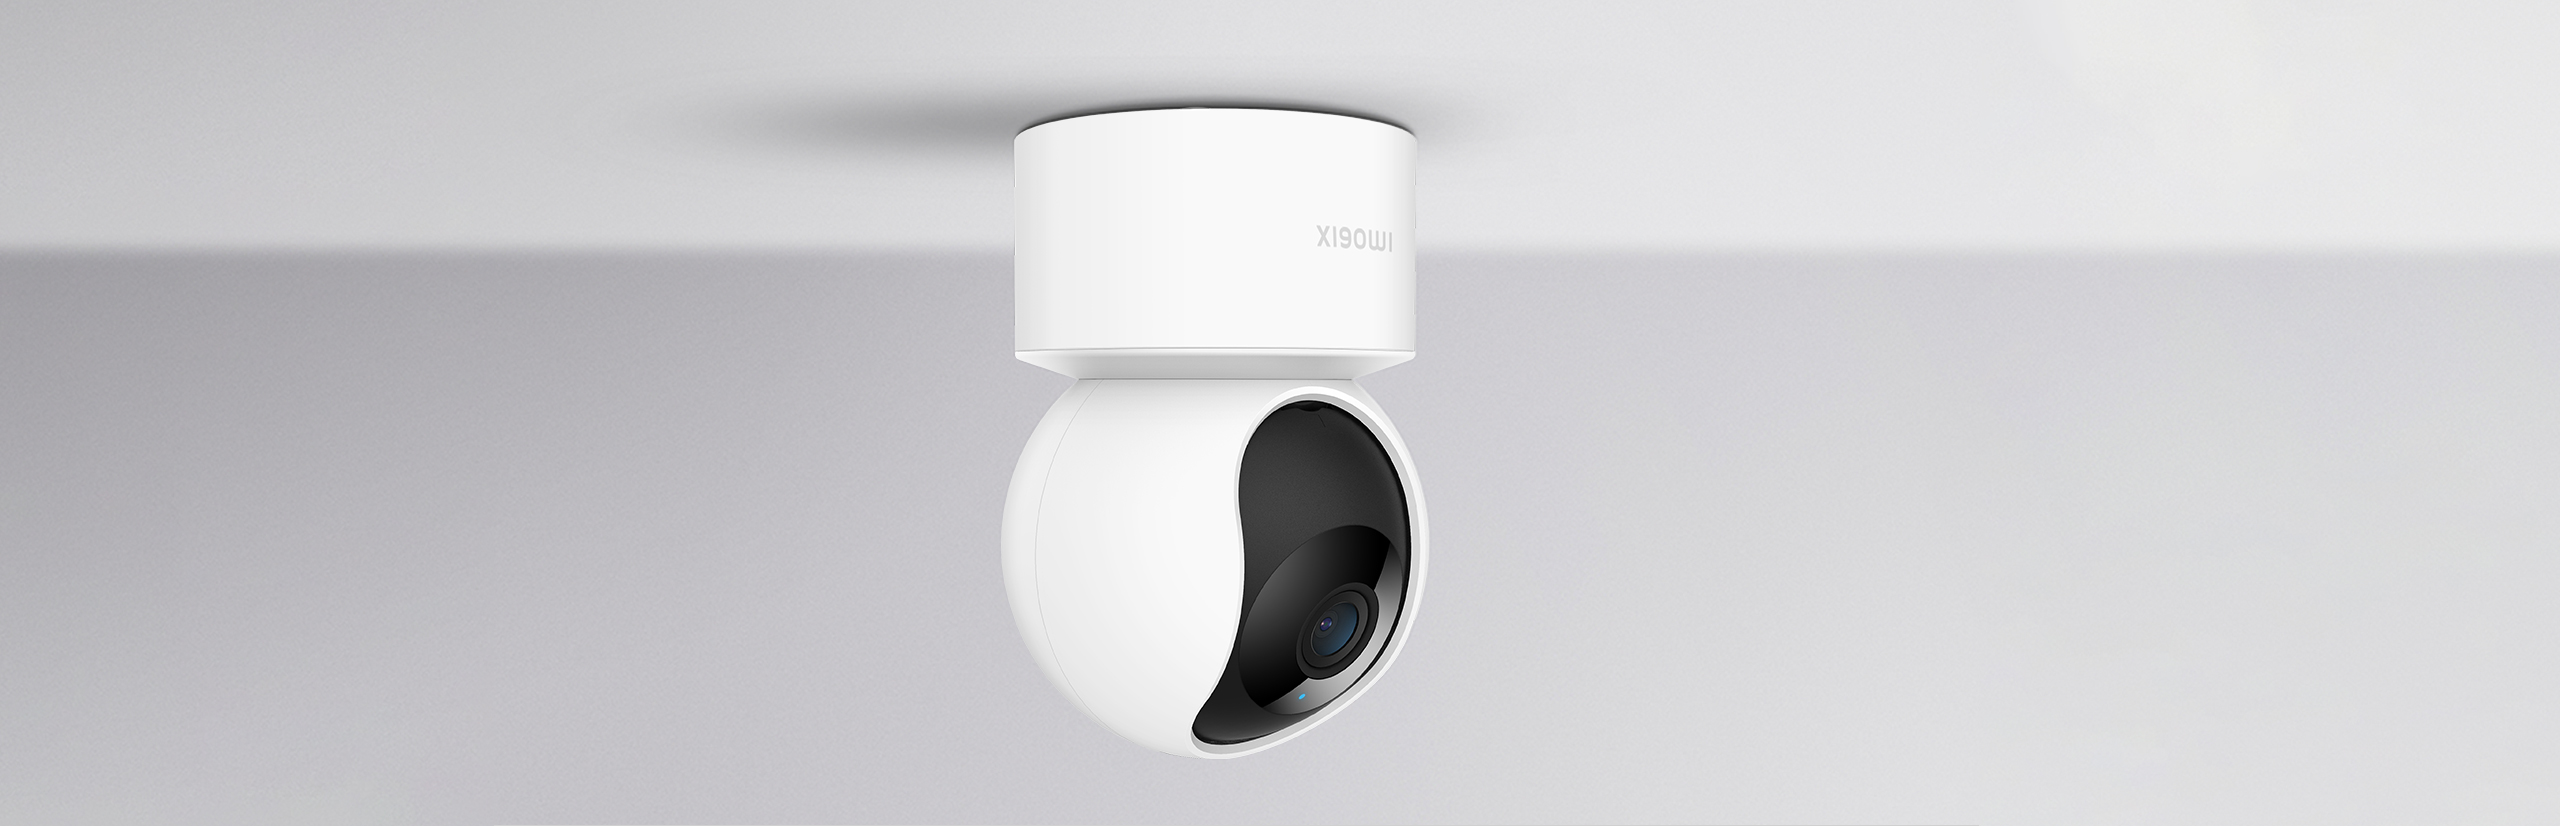 Xiaomi 360 Home Security Camera 1080p 2i